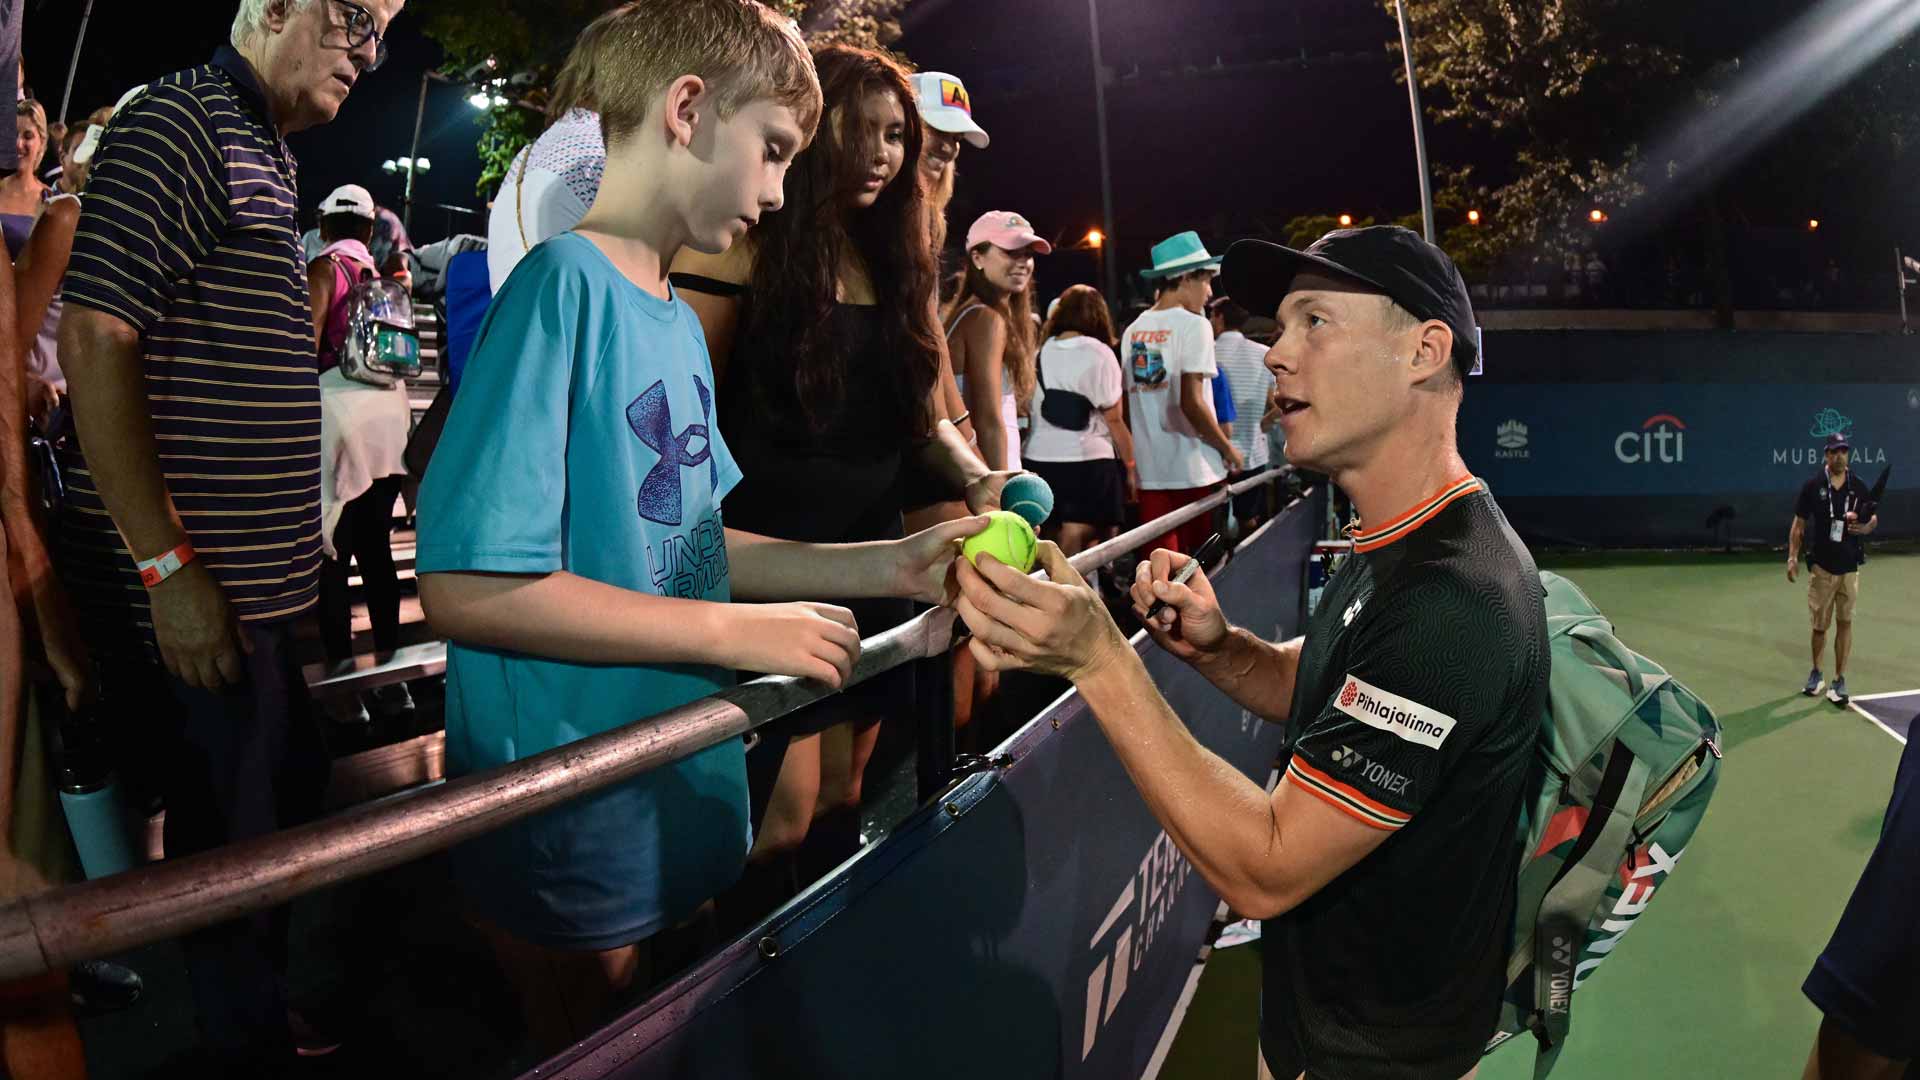 Harri Heliovaara speaks with a fan in Washington after a match.